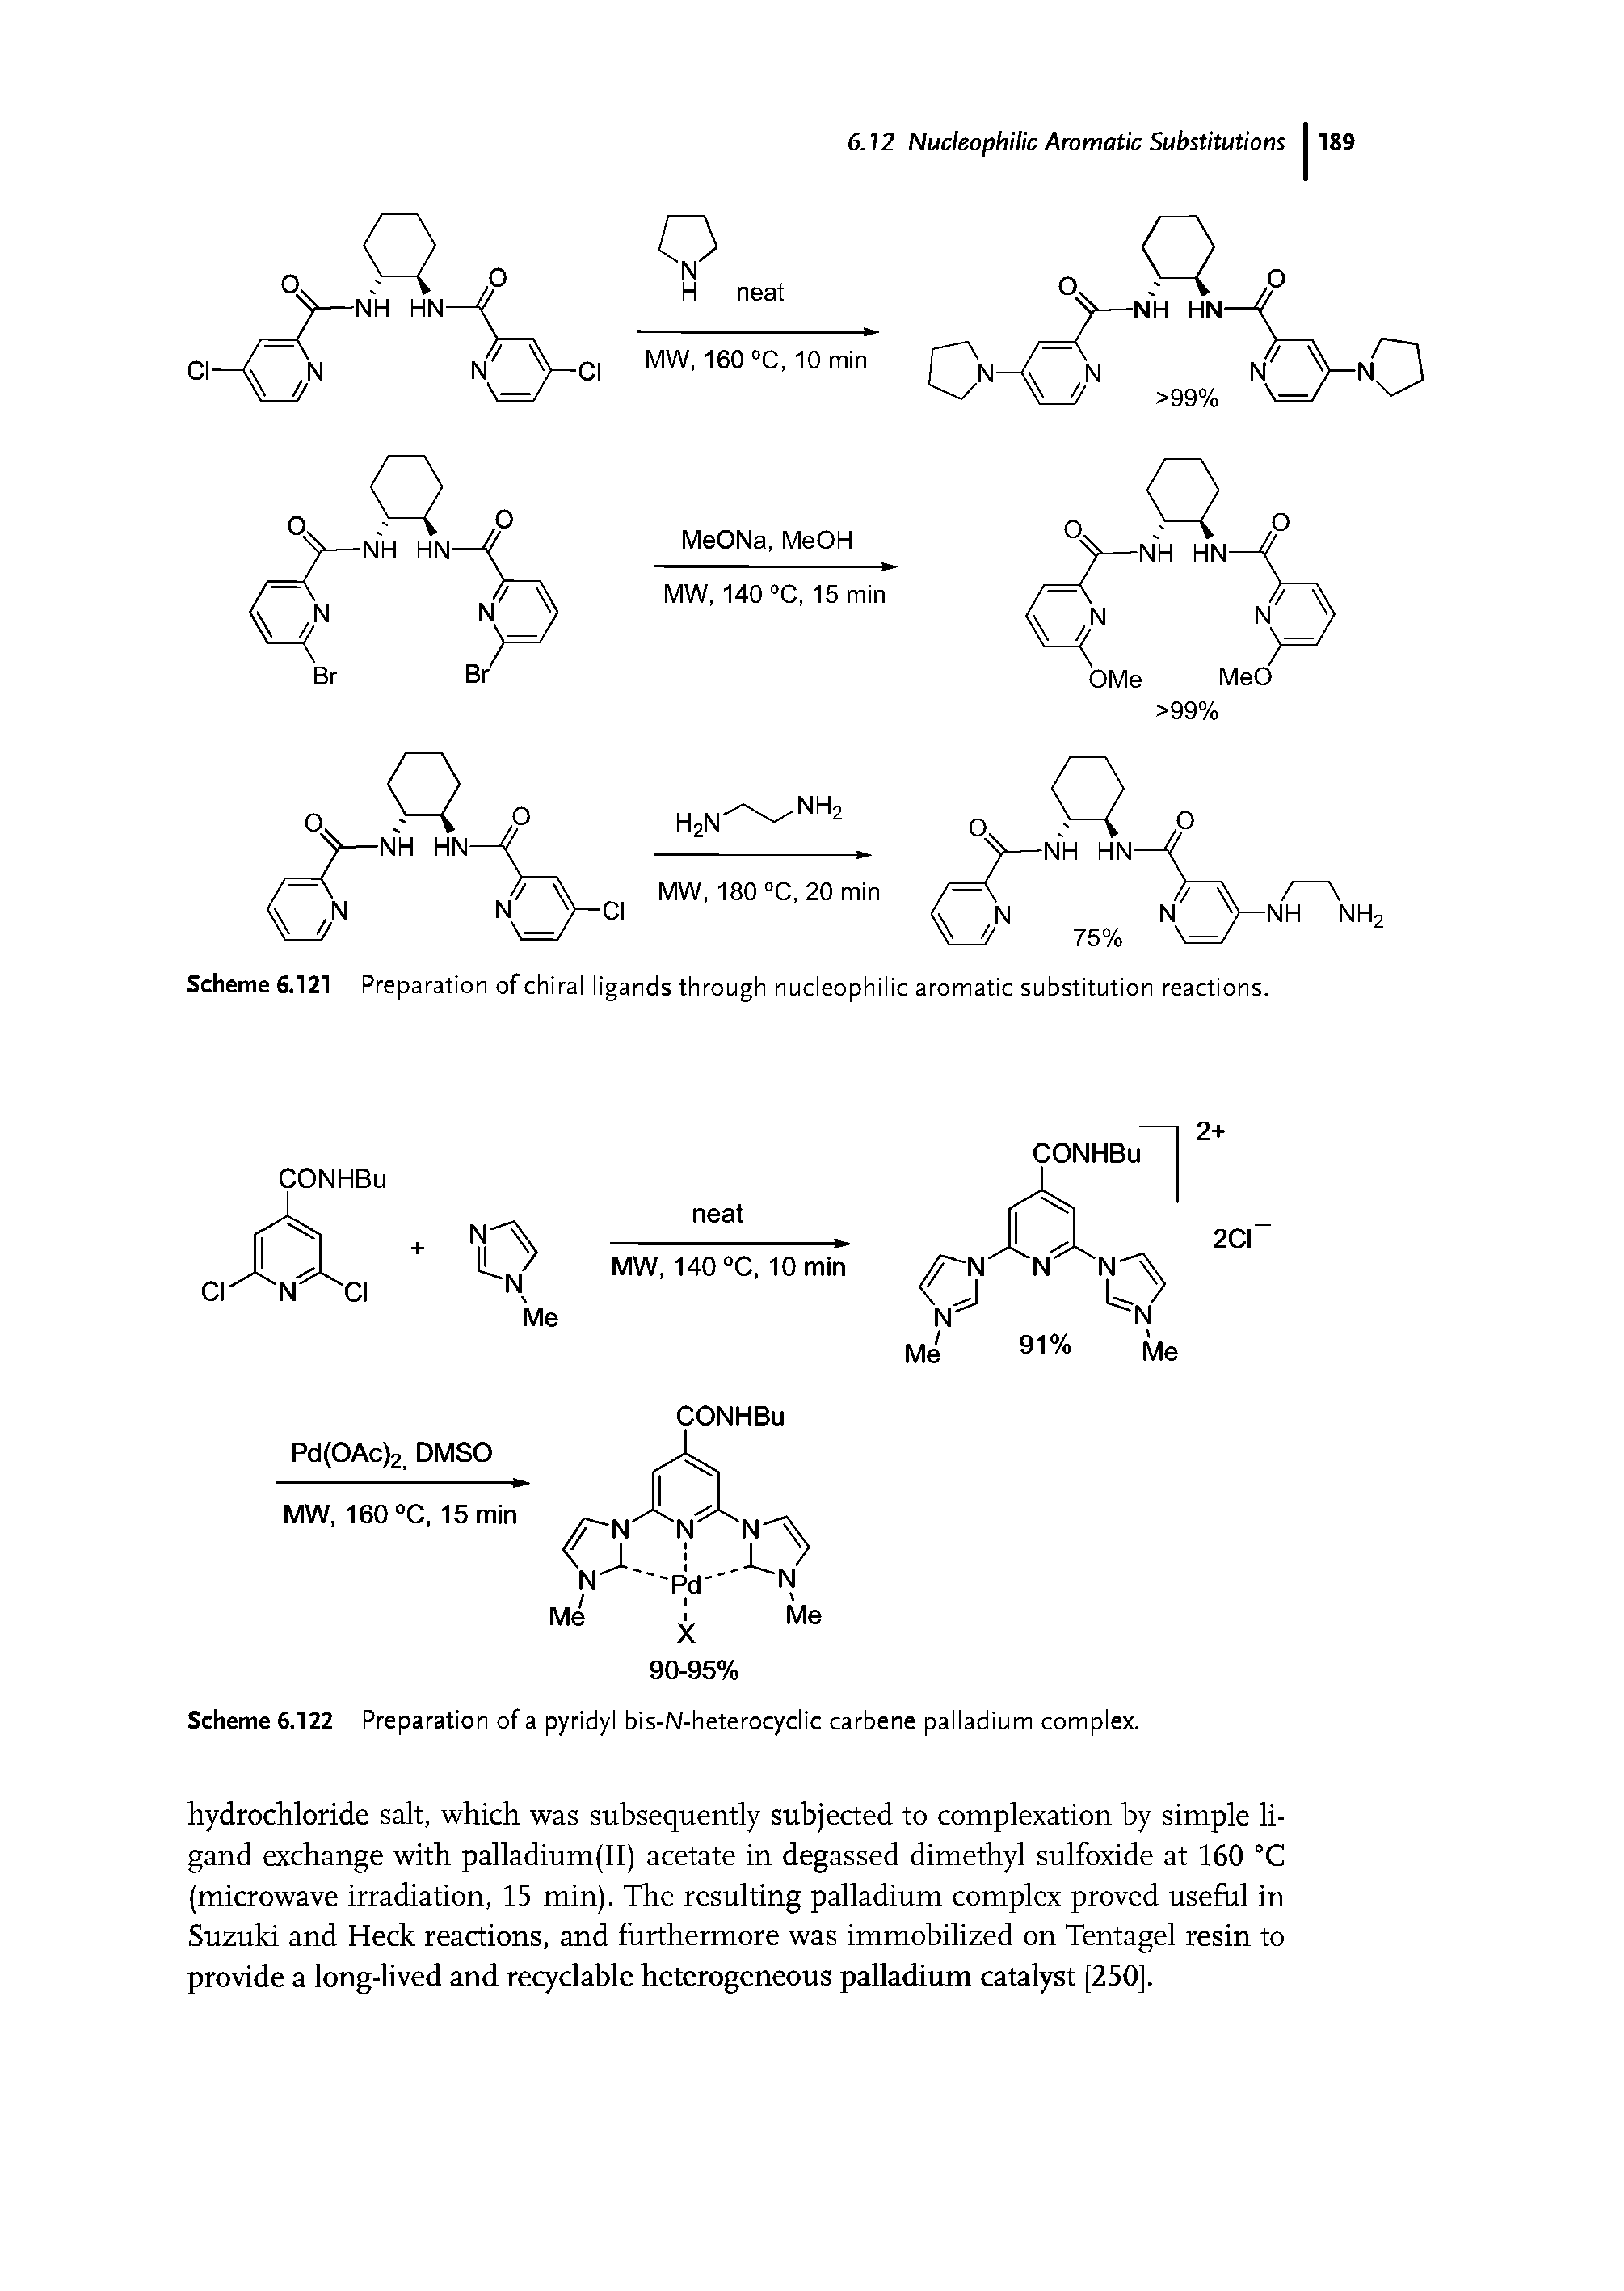 Scheme 6.122 Preparation of a pyridyl bis-N-heterocyclic carbene palladium complex.